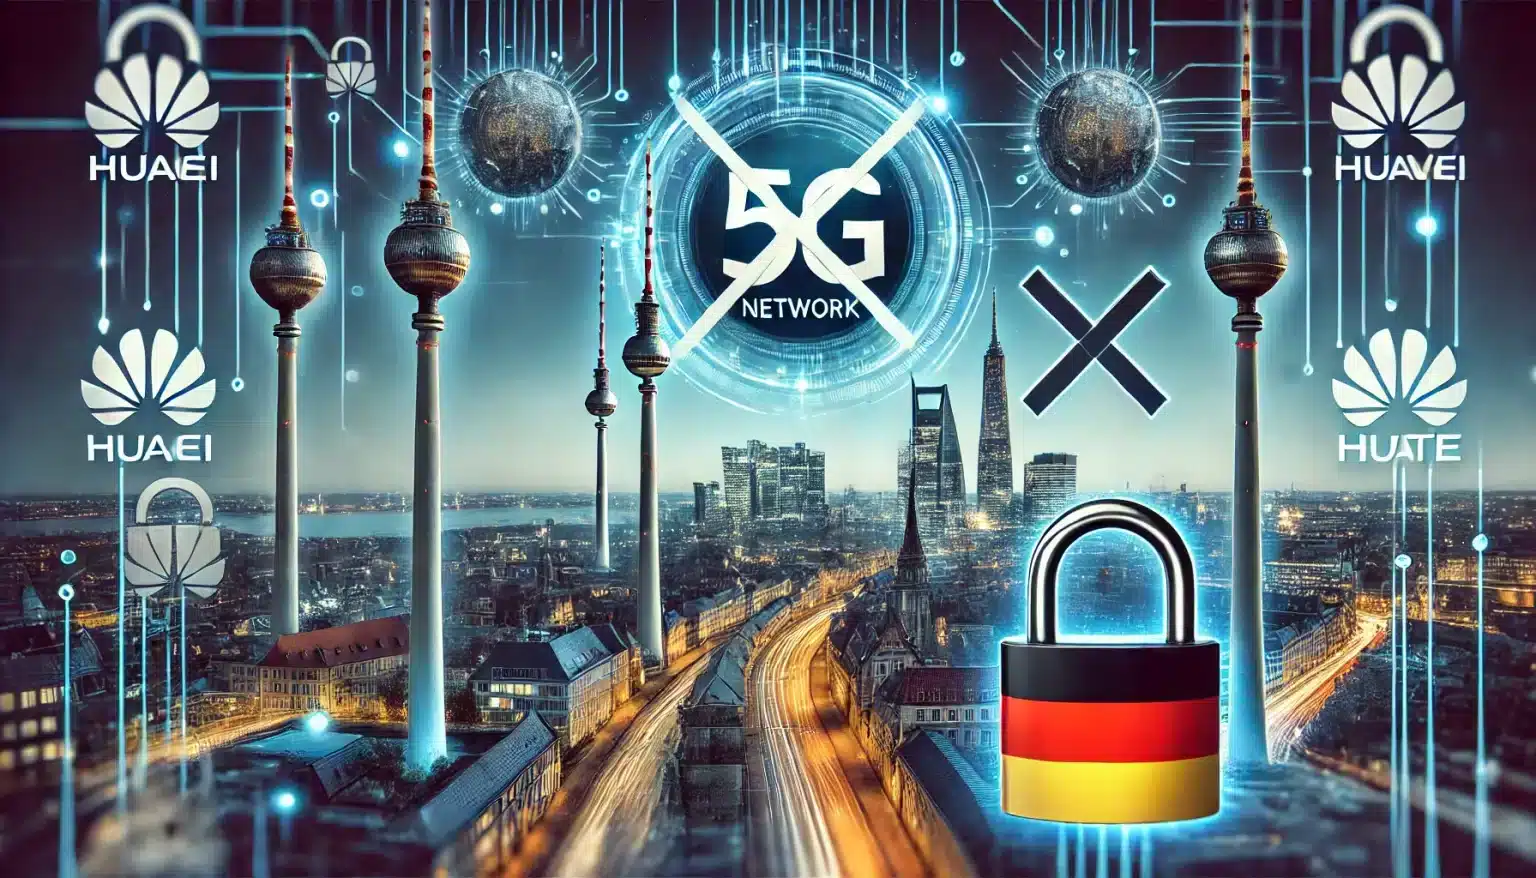 Germania stop ai componenti cinesi nelle reti 5G dal 2026